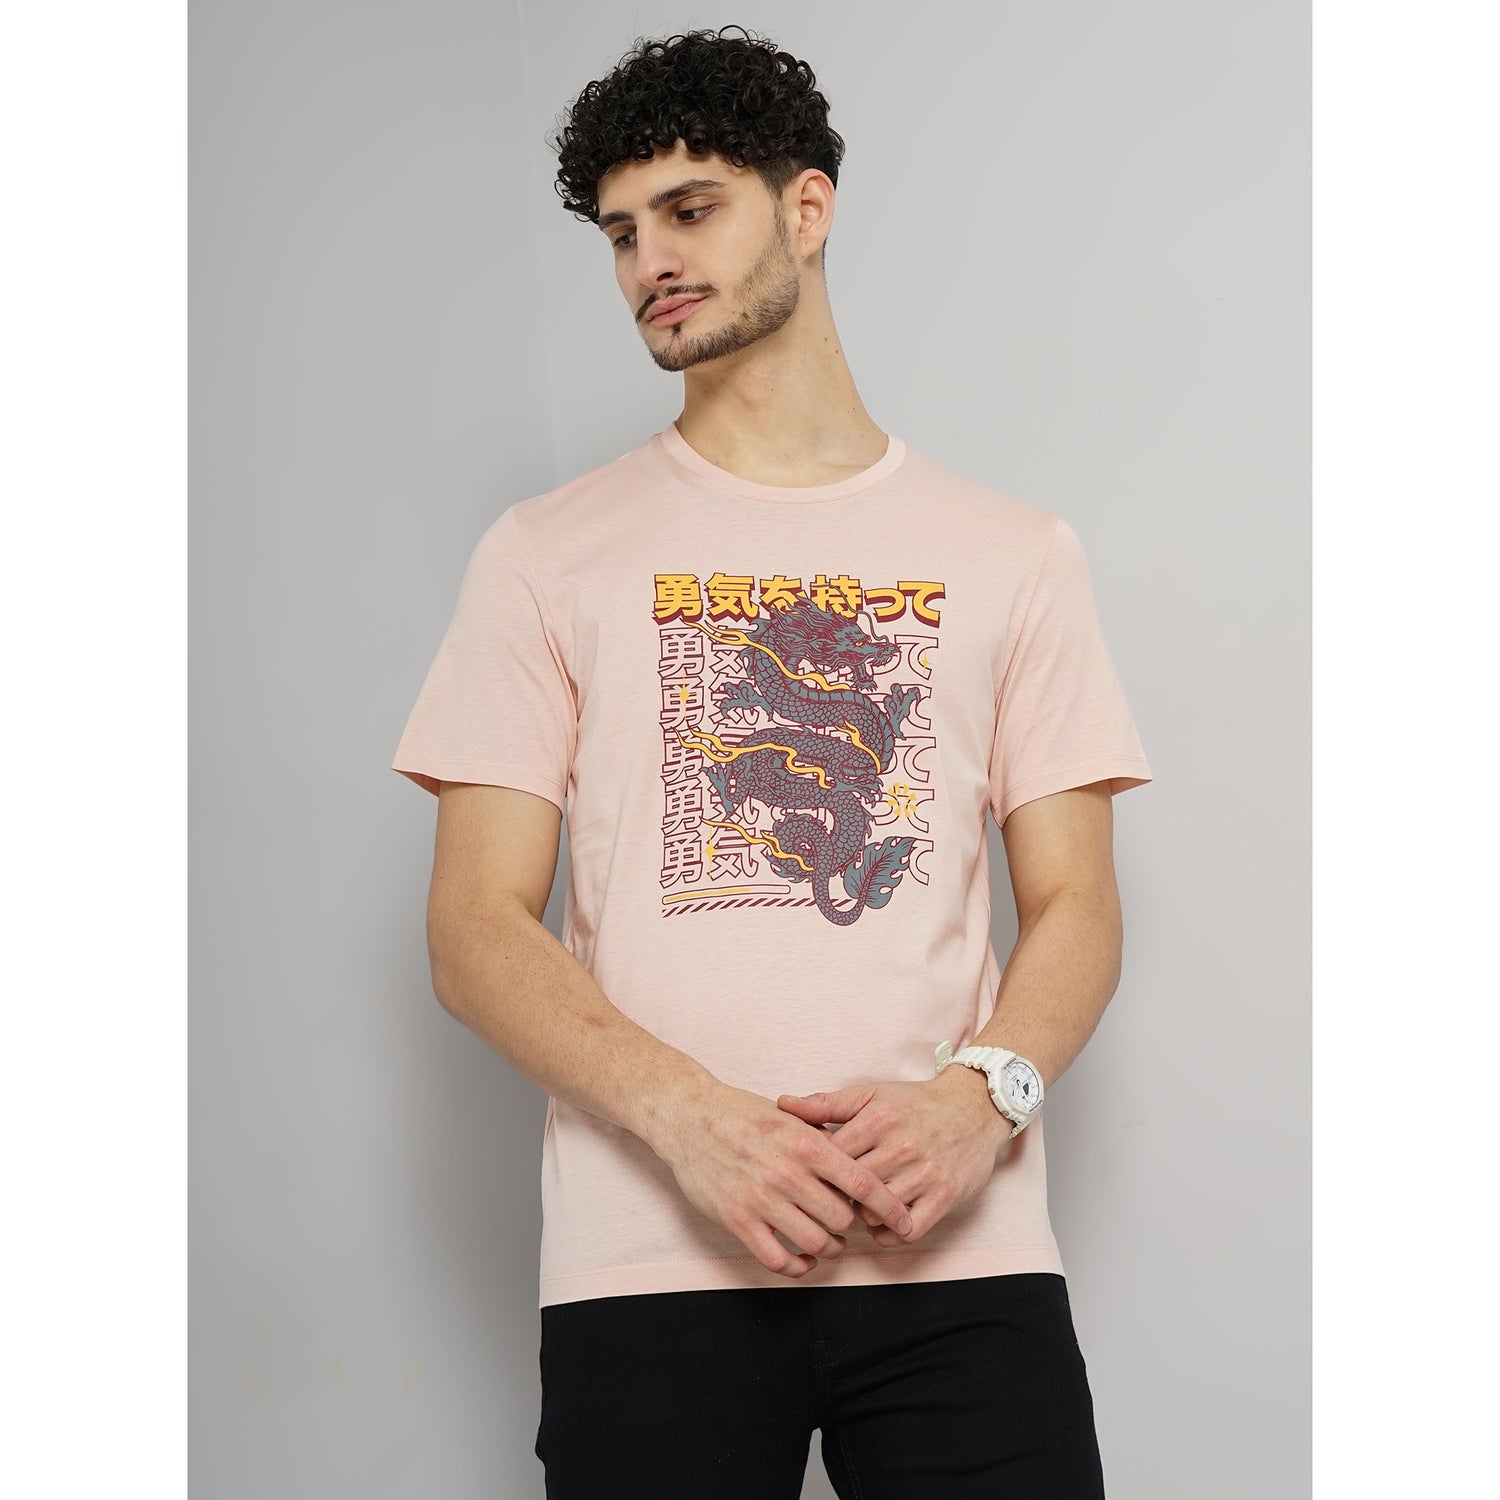 Men Pink Printed Regular Fit Cotton Graphic Tshirt (GELAMPI)